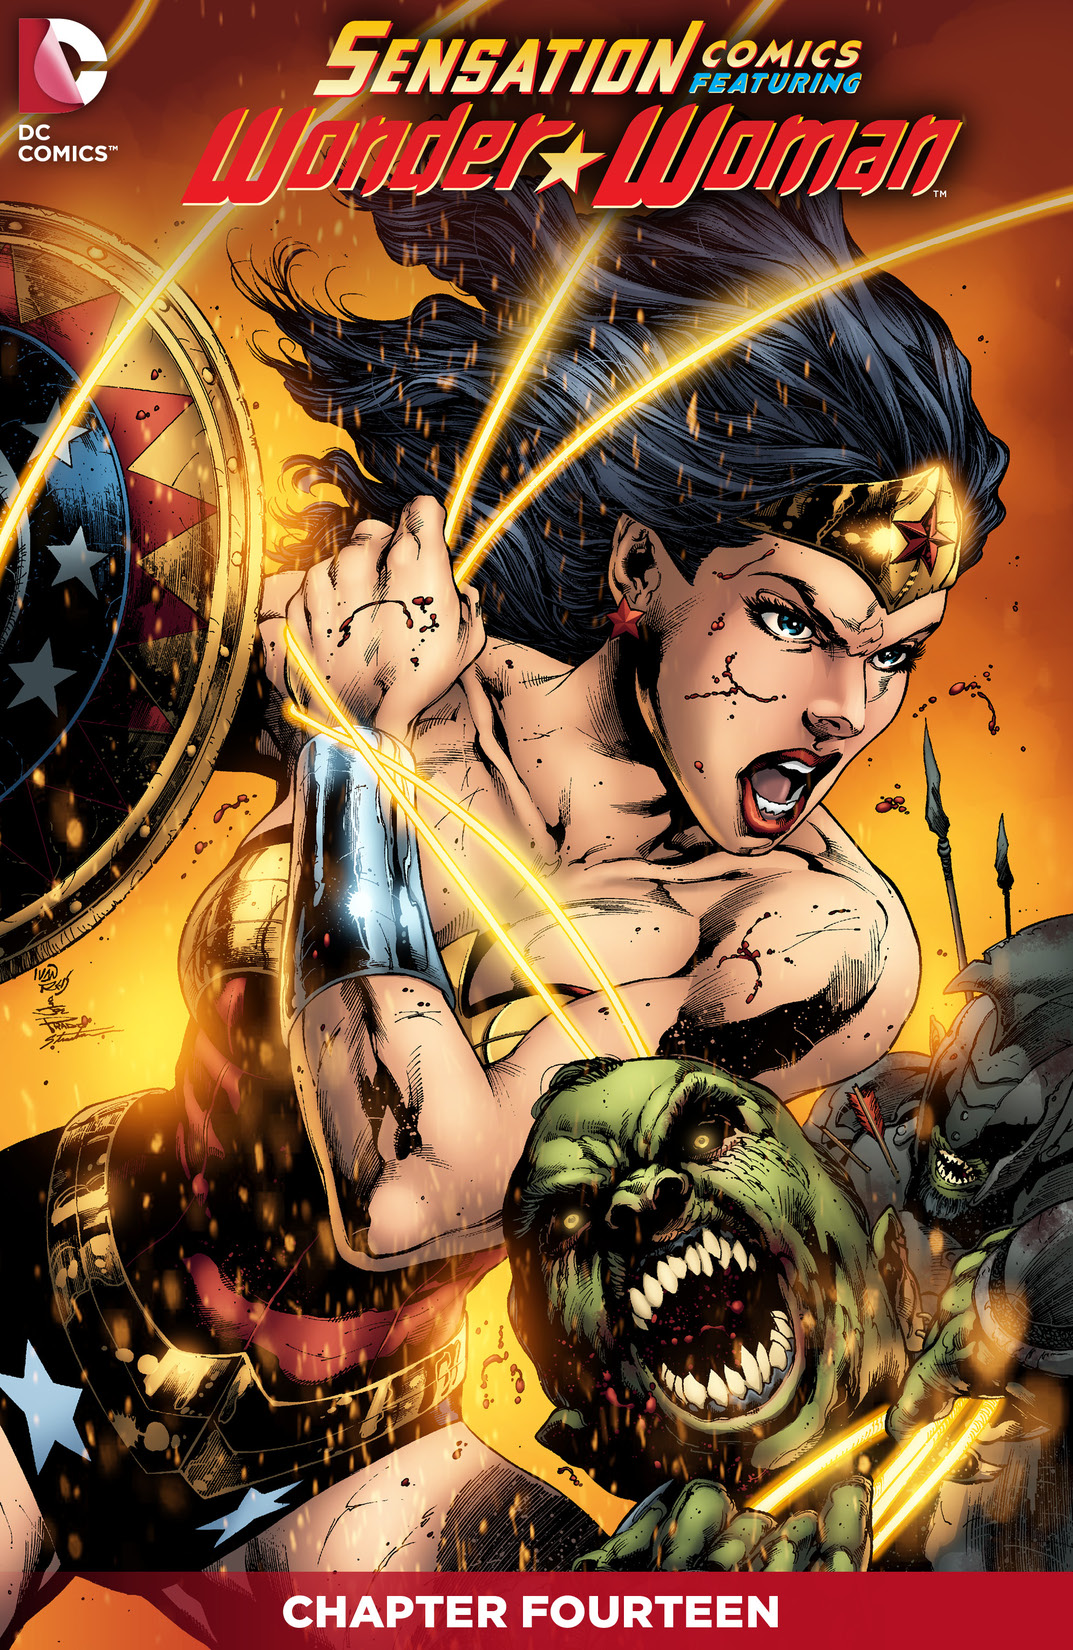 Sensation Comics Featuring Wonder Woman #14 preview images